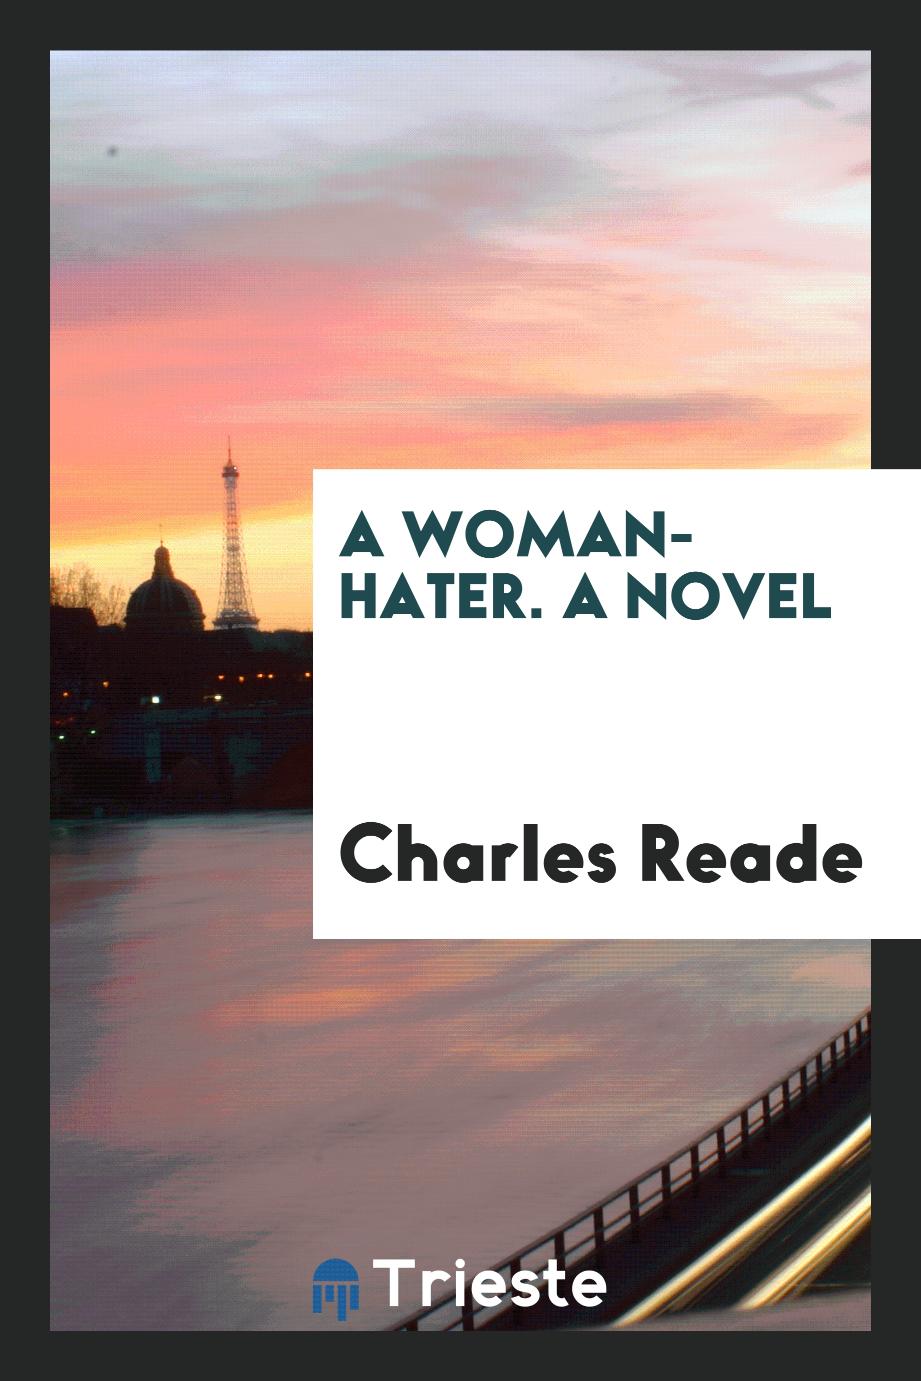 A woman-hater. A novel